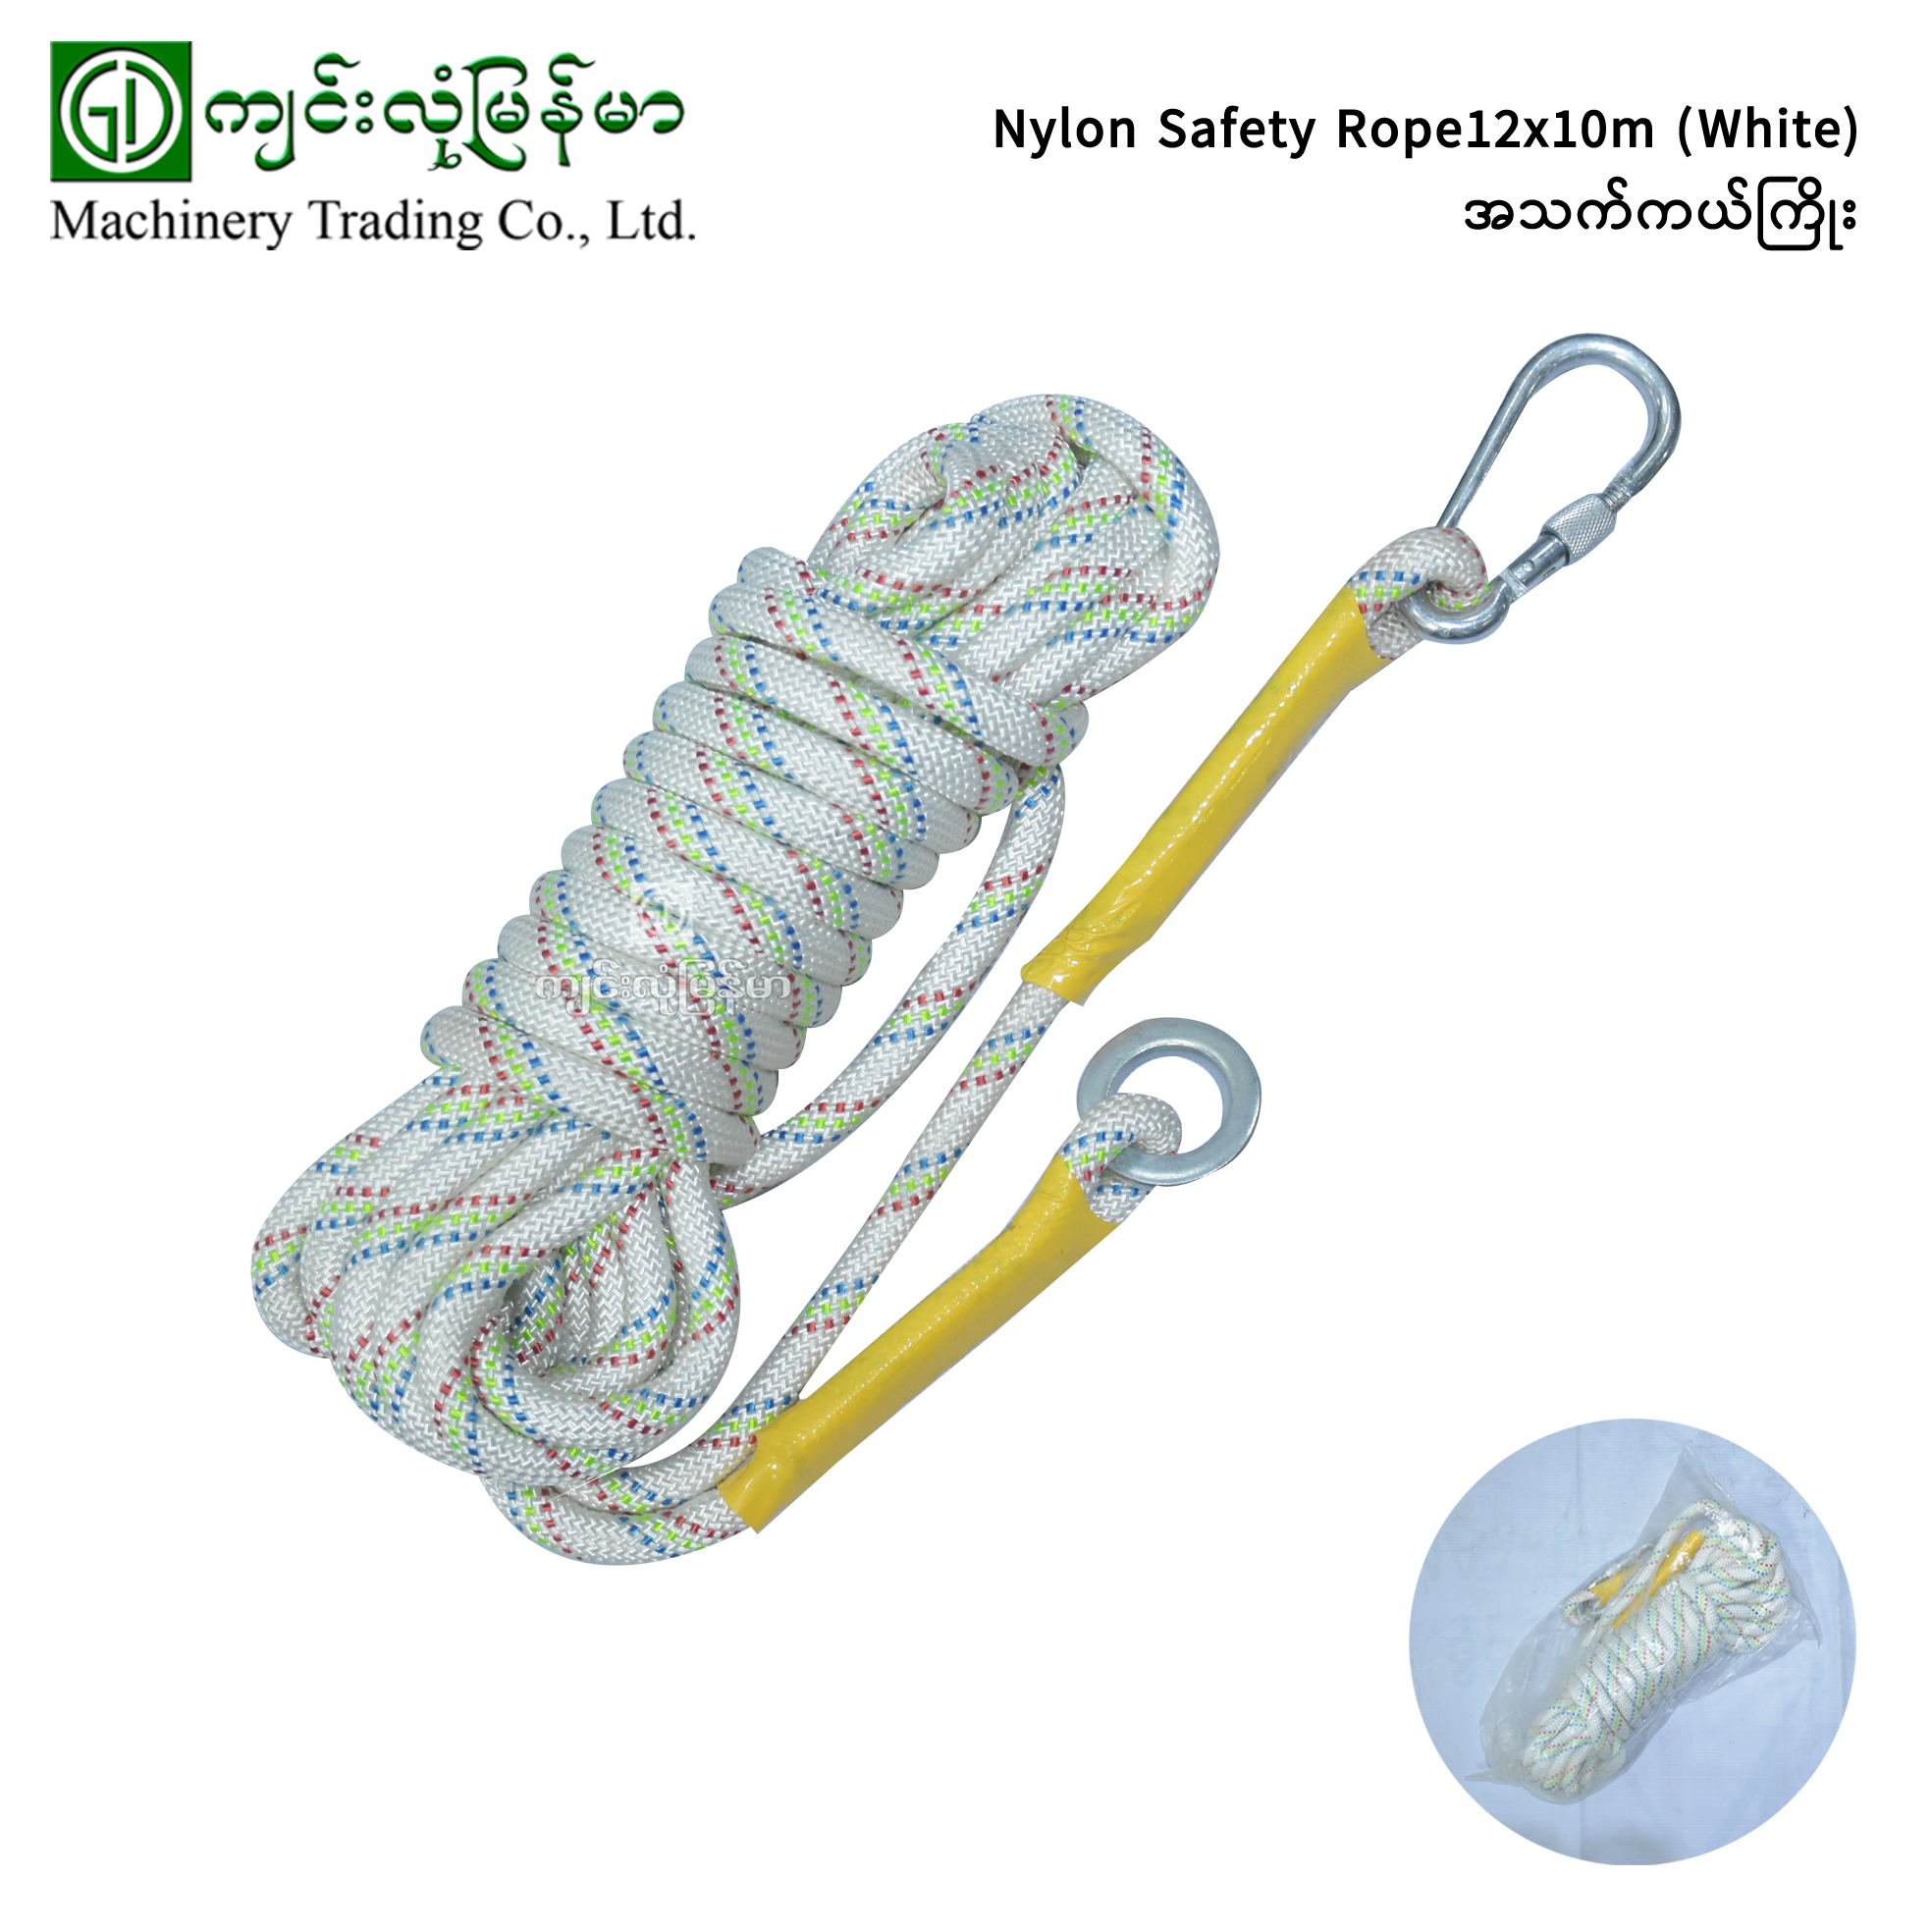 Nylon Safety Rope 12x10m(White) - Jinlong Myanmar